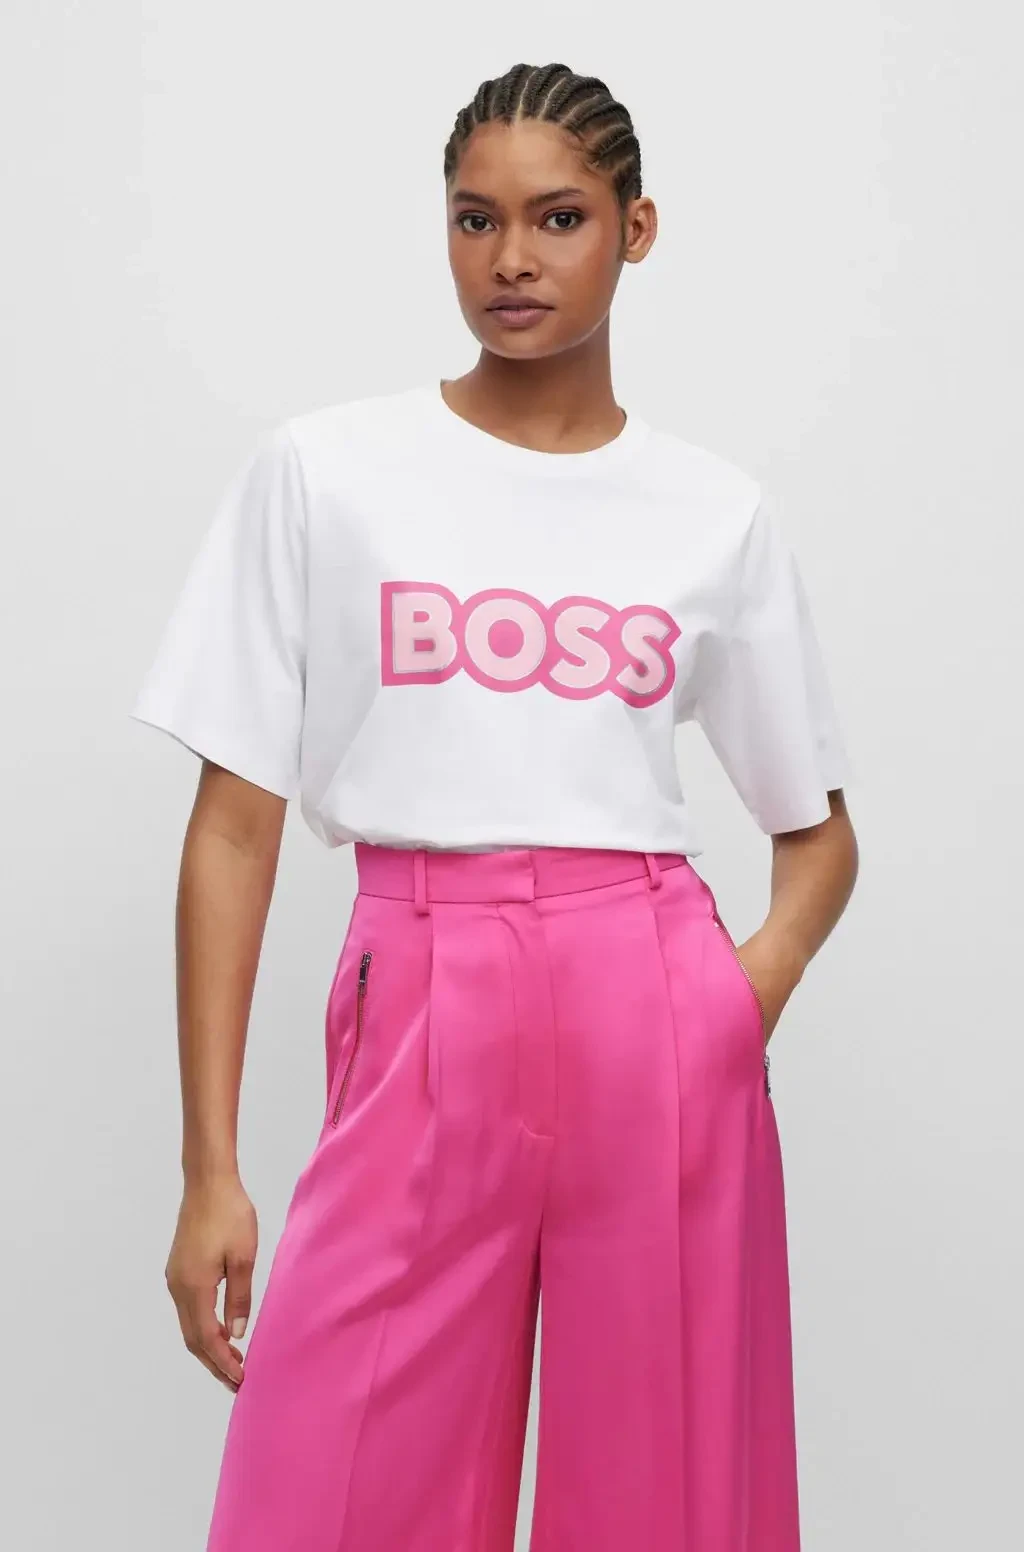 T-shirt en coton stretch BOSS X Alica Schmidt blanc et rose avec logo